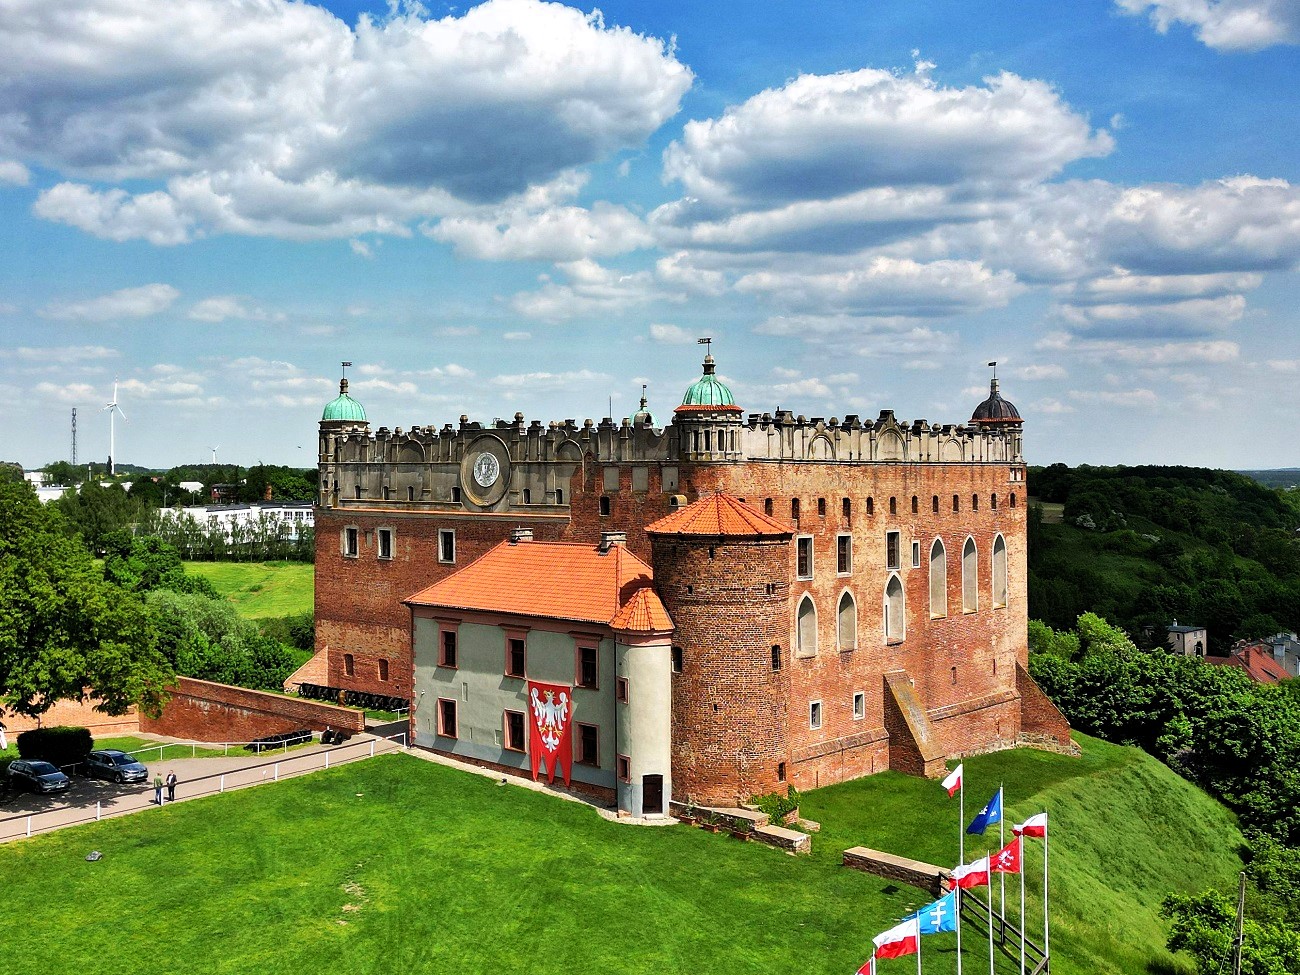 Zamek w Golubiu Dobrzyniu | Chata Leśna Polana